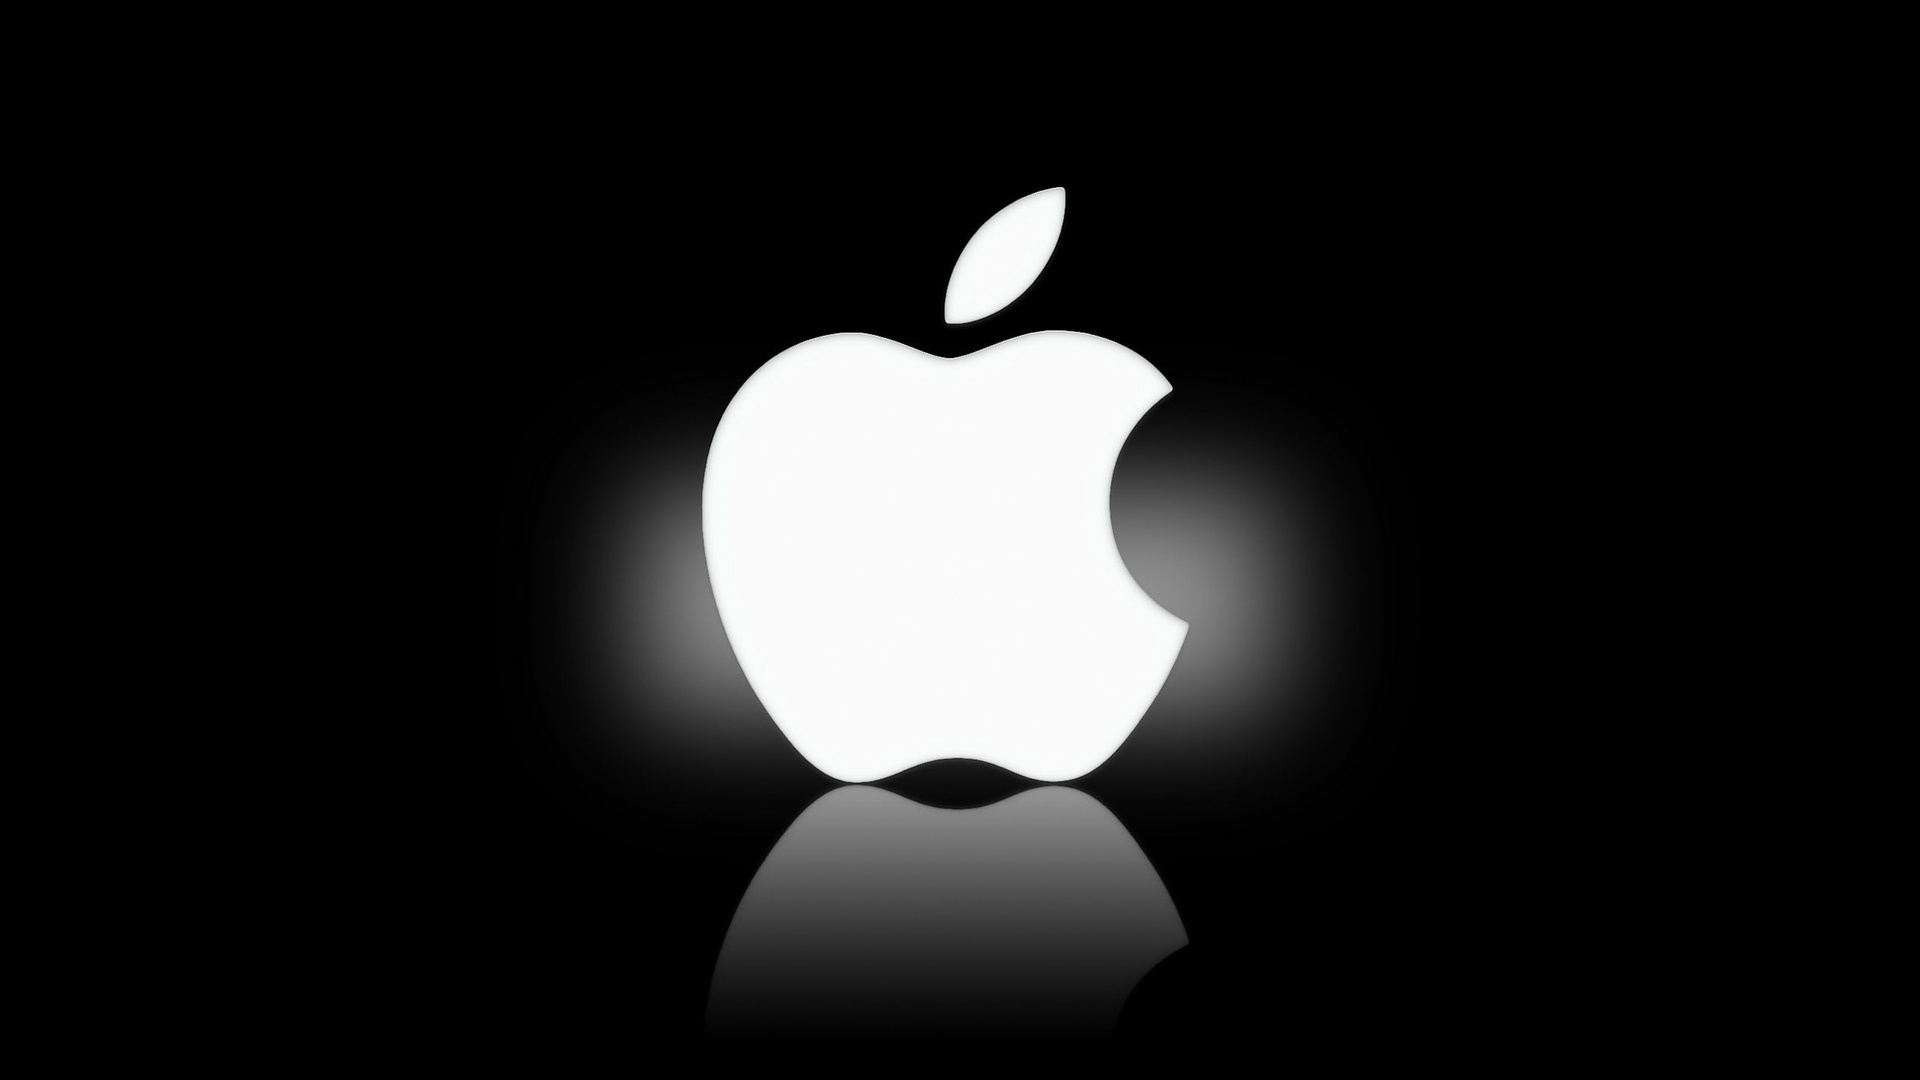 Apple Sold 39.3M iPhones During Last Quarter